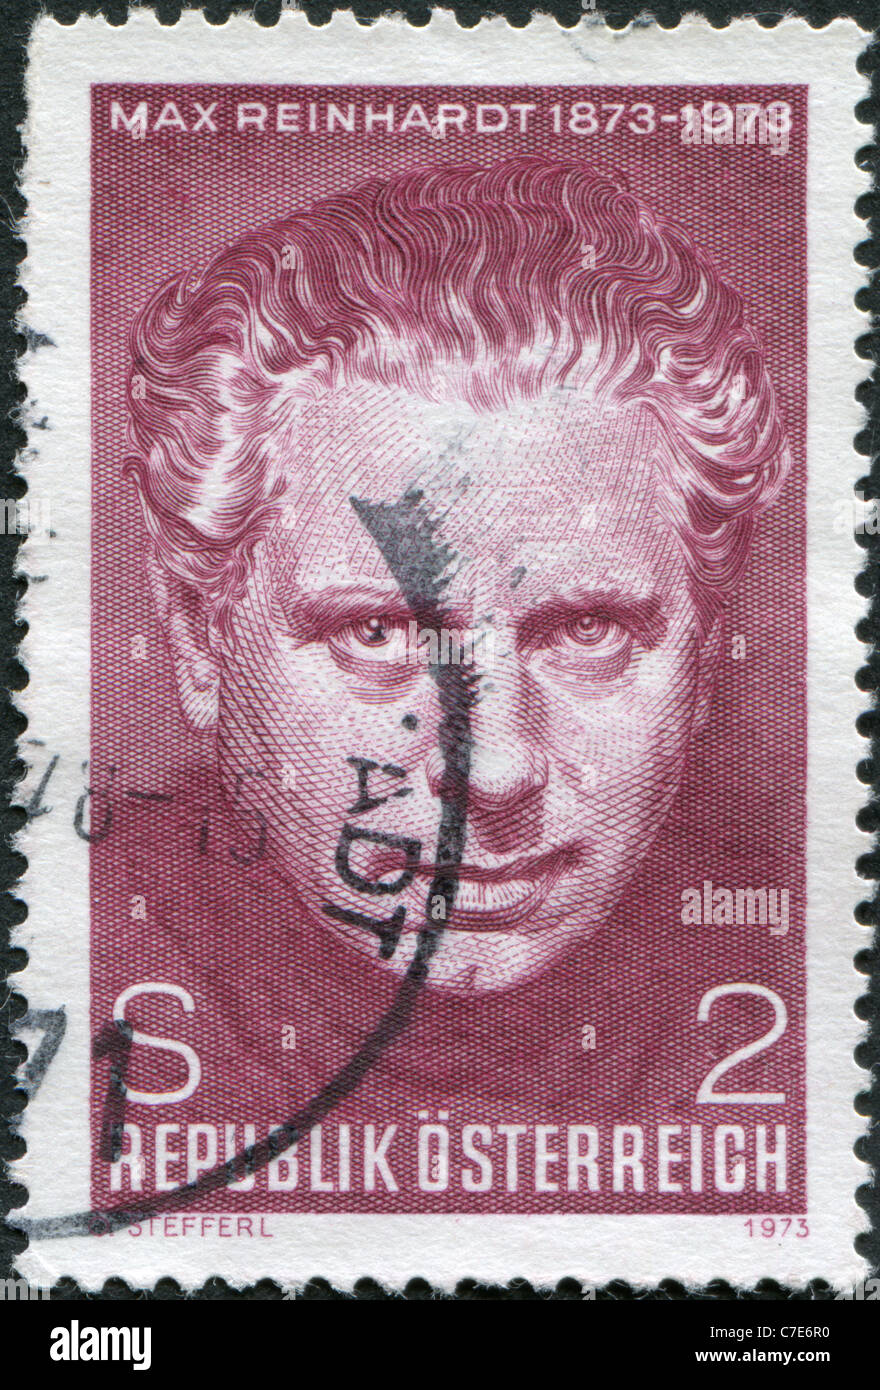 Un timbre imprimé en Autriche, est dédiée à la célébration du 100e anniversaire de Max Reinhardt, directeur de théâtre Banque D'Images